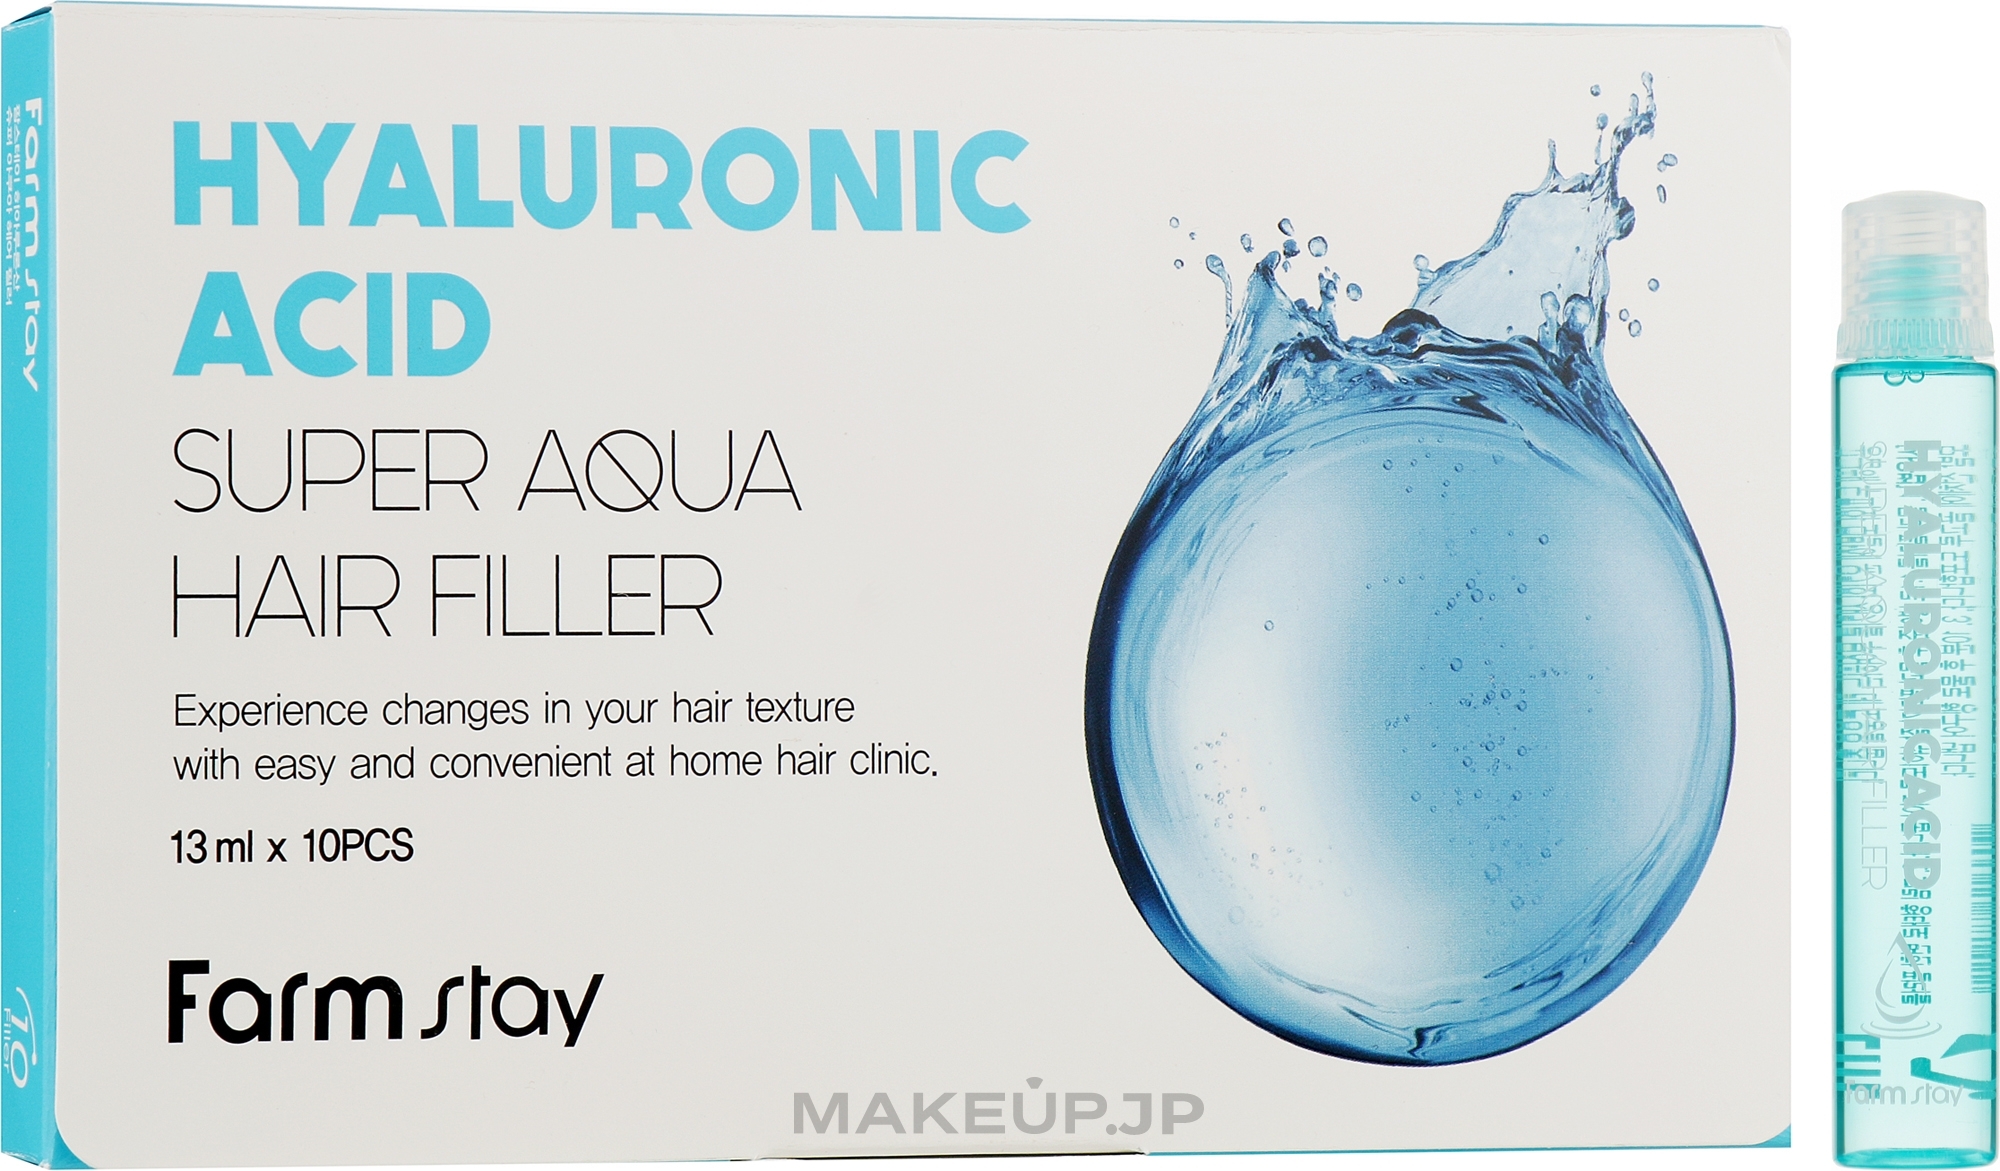 Nourishing Hyaluronic Acid Hair Filler - Farmstay Hyaluronic Acid Super Aqua Hair Filler — photo 10 x 13 ml